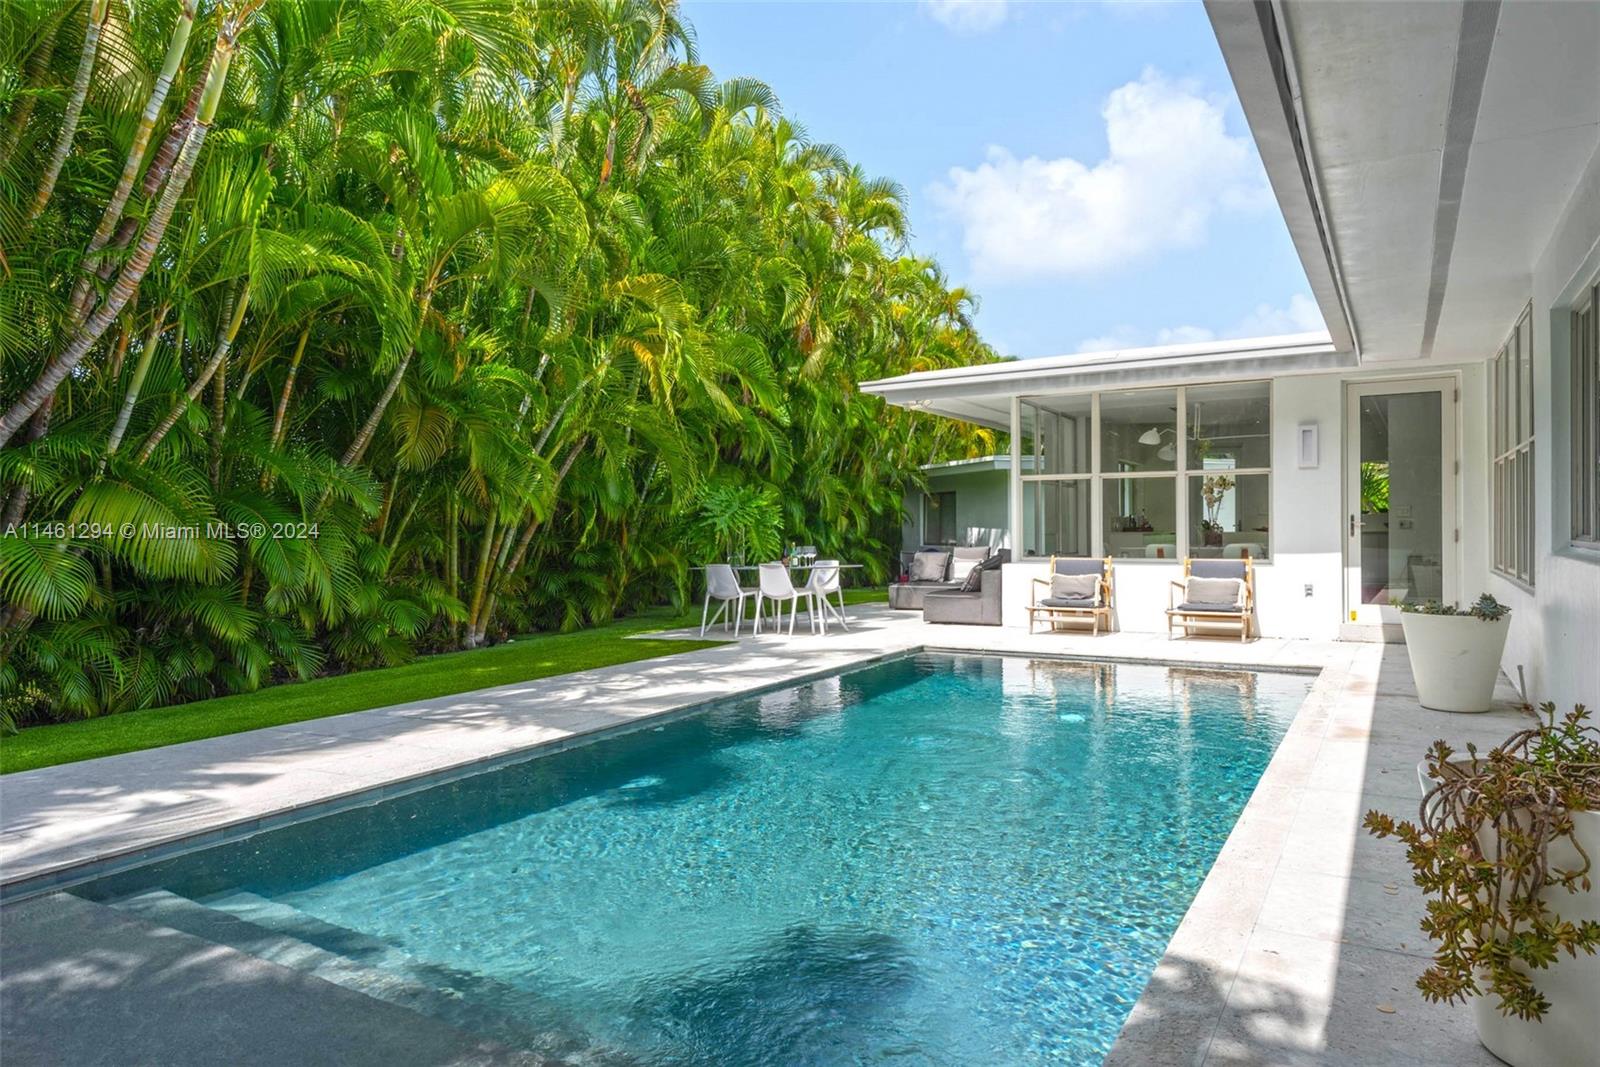 Rental Property at 3350 Flamingo Dr, Miami Beach, Miami-Dade County, Florida - Bedrooms: 4 
Bathrooms: 3  - $15,000 MO.